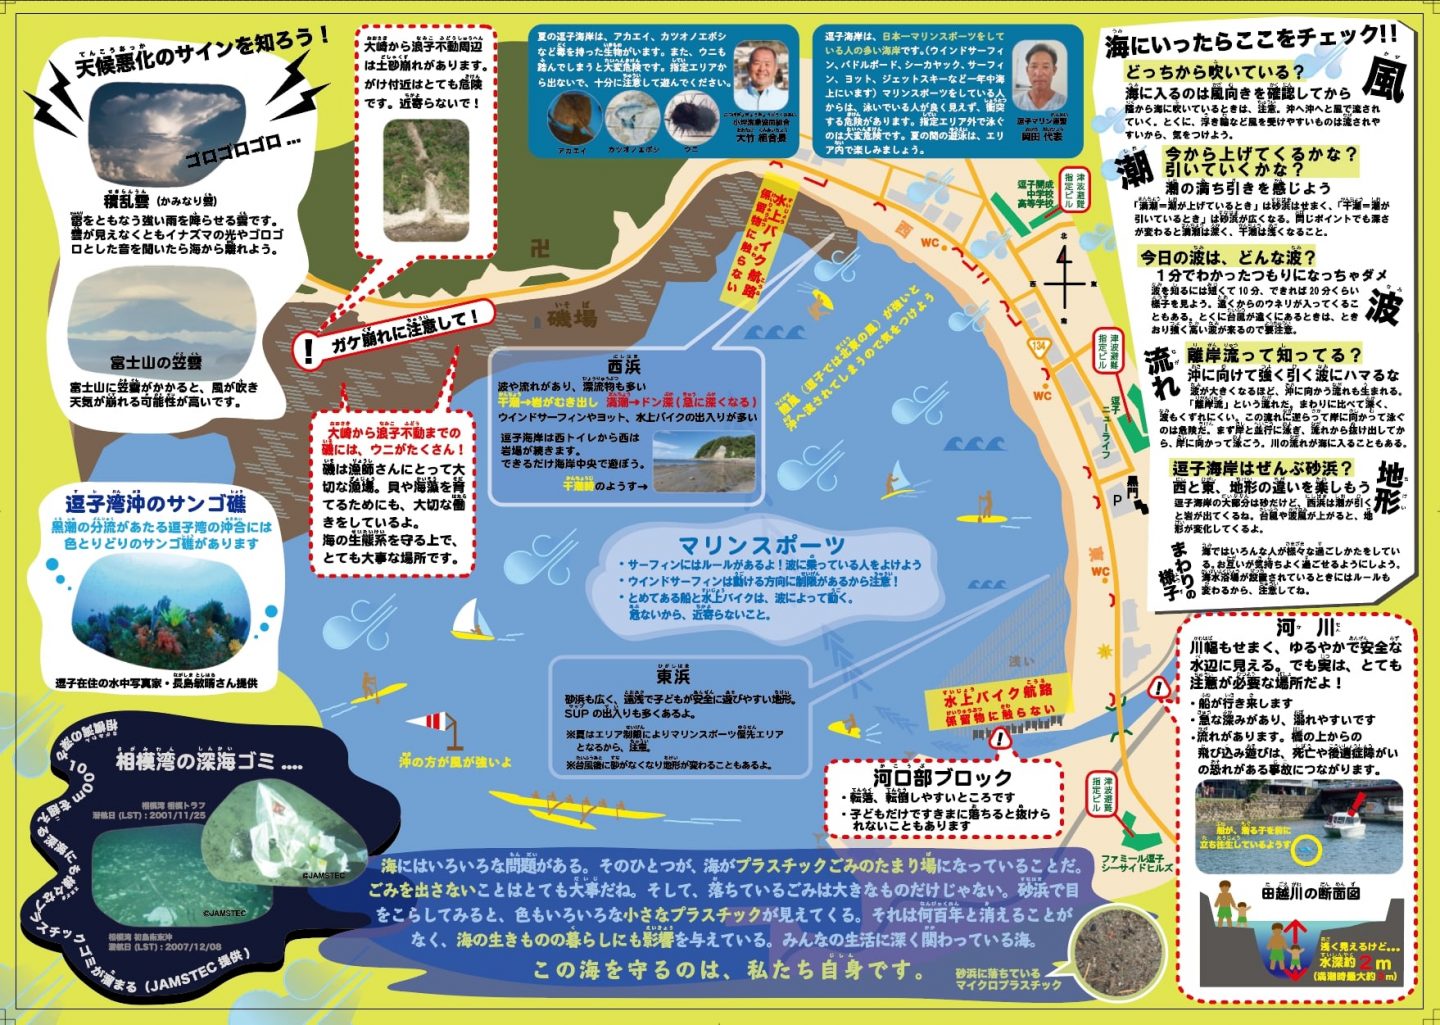 「そっか」が製作した「逗子の海辺の安全ガイド」。生き物に関する知識や、海の流れに関する注意事項など、活動で培った知恵がギュッと詰め込まれている。逗子市観光協会のホームページ（リンク：http://www.zushitabi.jp/）からもダウンロード可能。